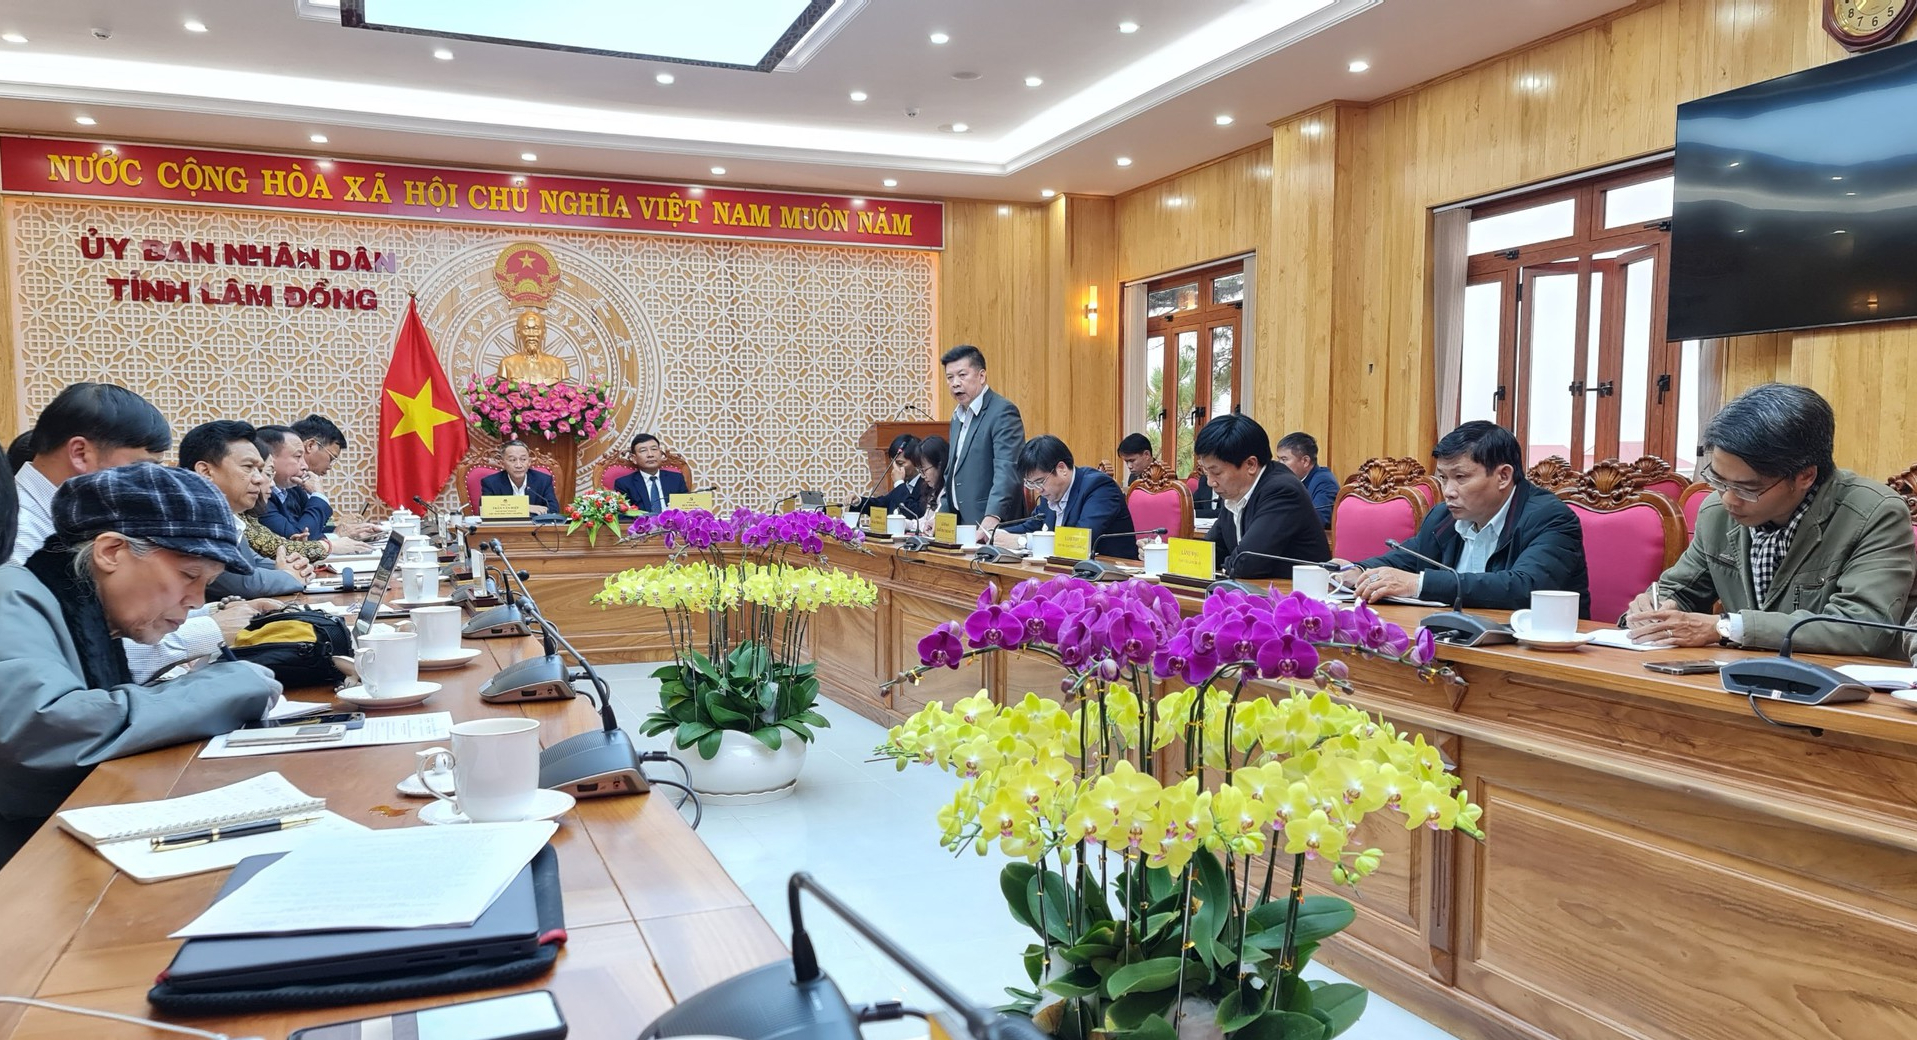 Tuyến cao tốc từ Tân Phú đến Liên Khương: Ước mơ của người dân và chính quyền qua 4 nhiệm kỳ - Ảnh 2.